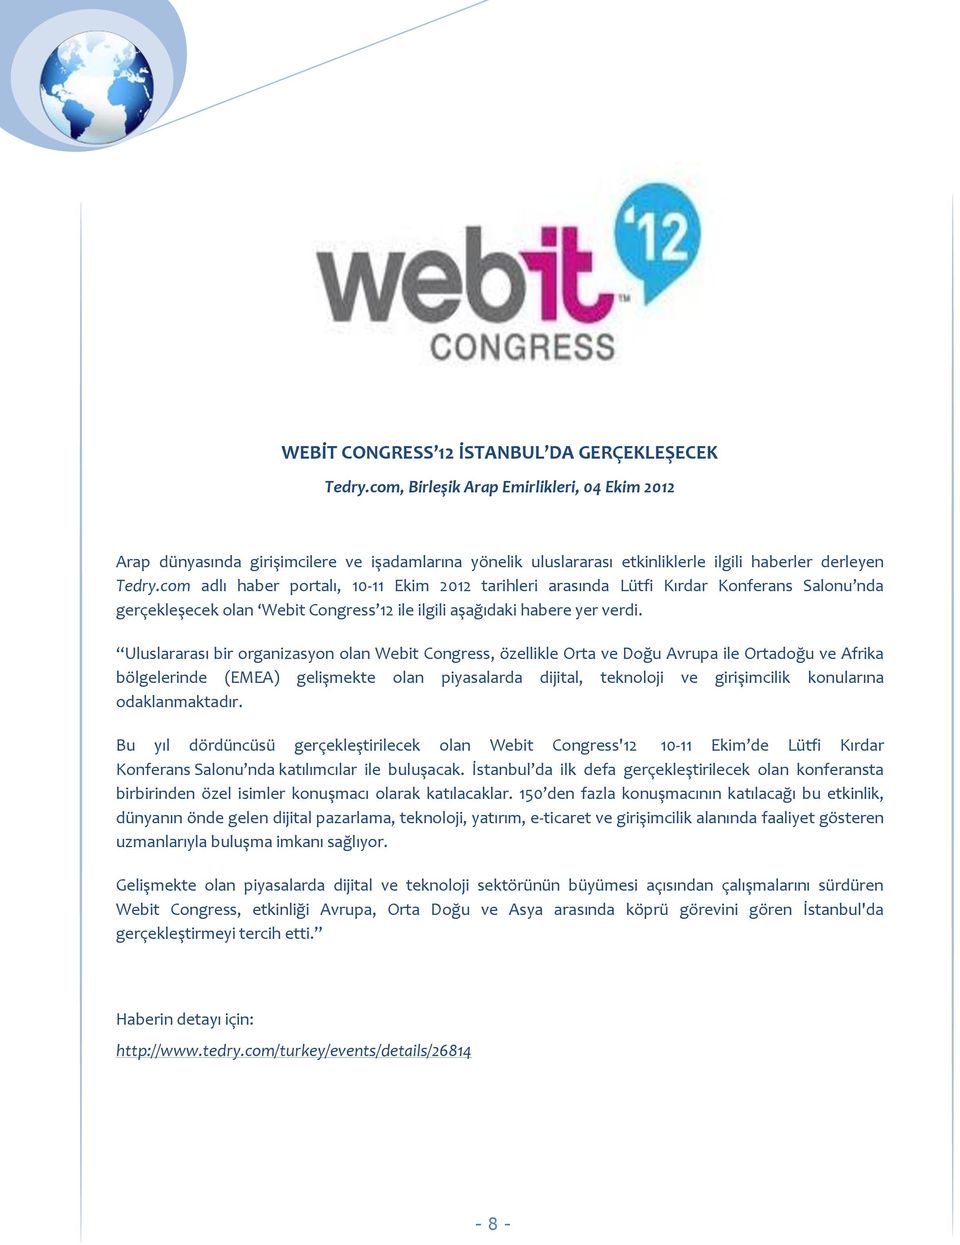 com adlı haber portalı, 10-11 Ekim 2012 tarihleri arasında Lütfi Kırdar Konferans Salonu nda gerçekleşecek olan Webit Congress 12 ile ilgili aşağıdaki habere yer verdi.